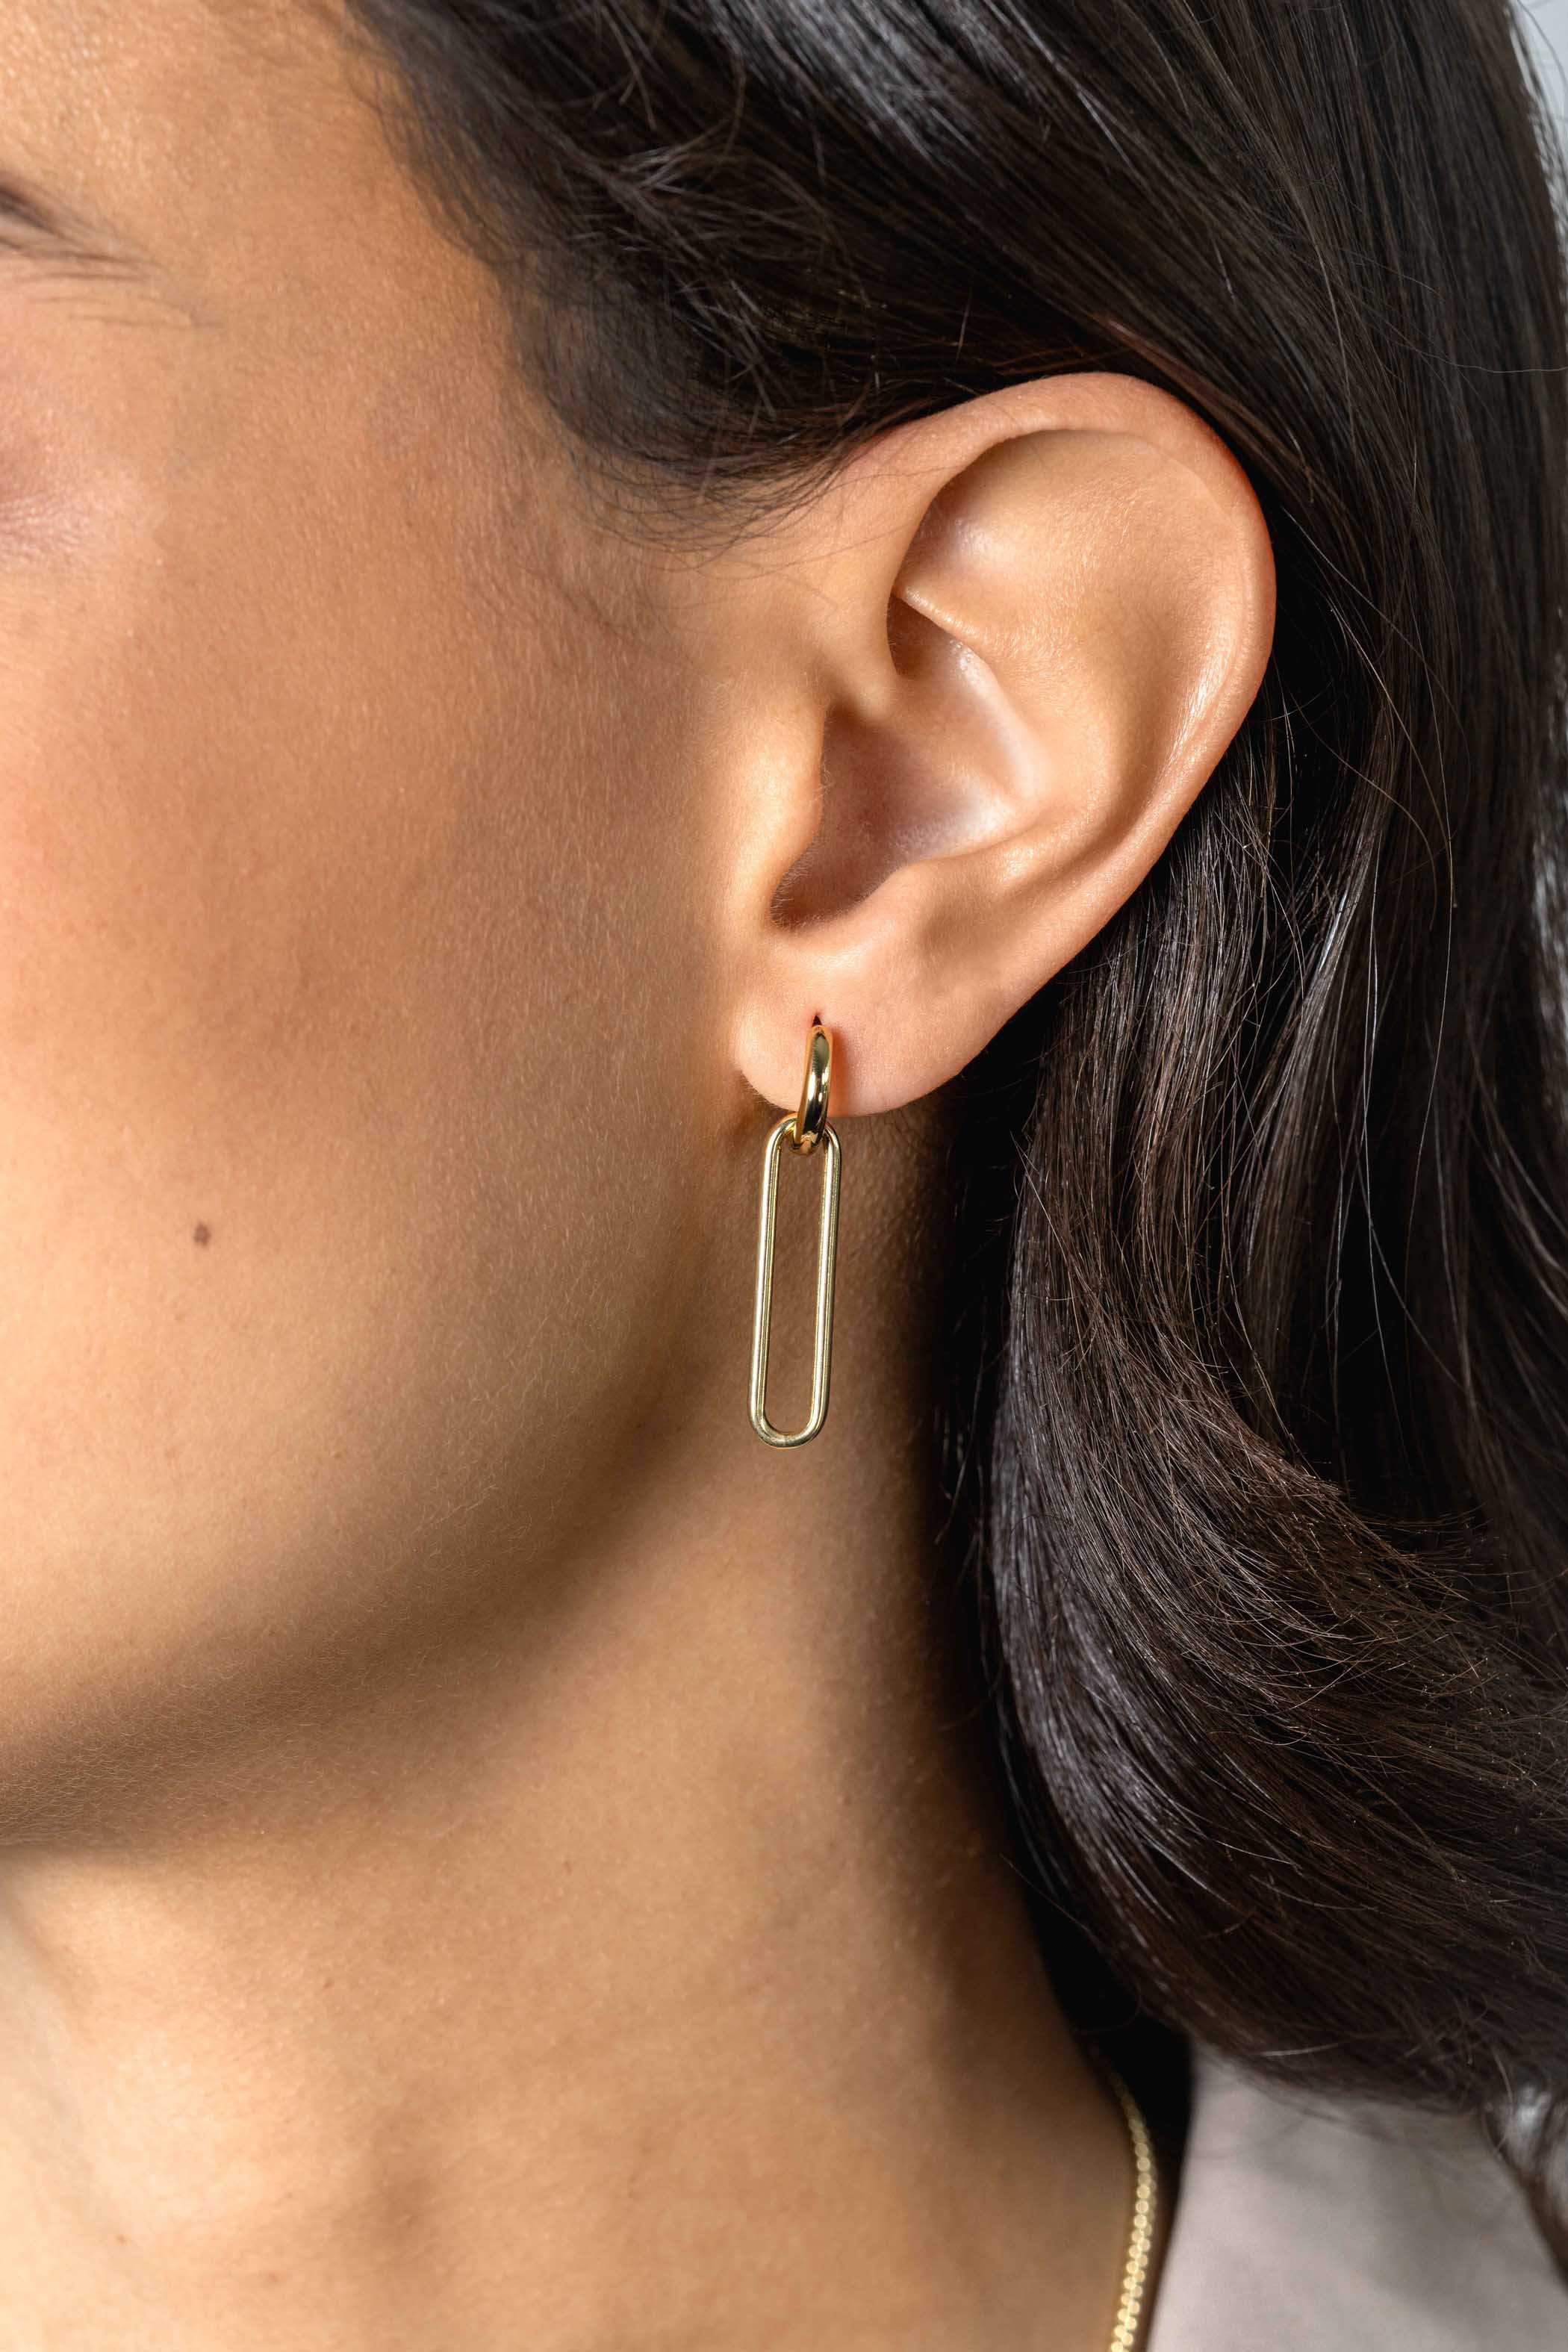 28mm ZINZI Gold Plated Sterling Silver Earrings Pendants Open Oval ZICH2416G (excl. hoop earrings)